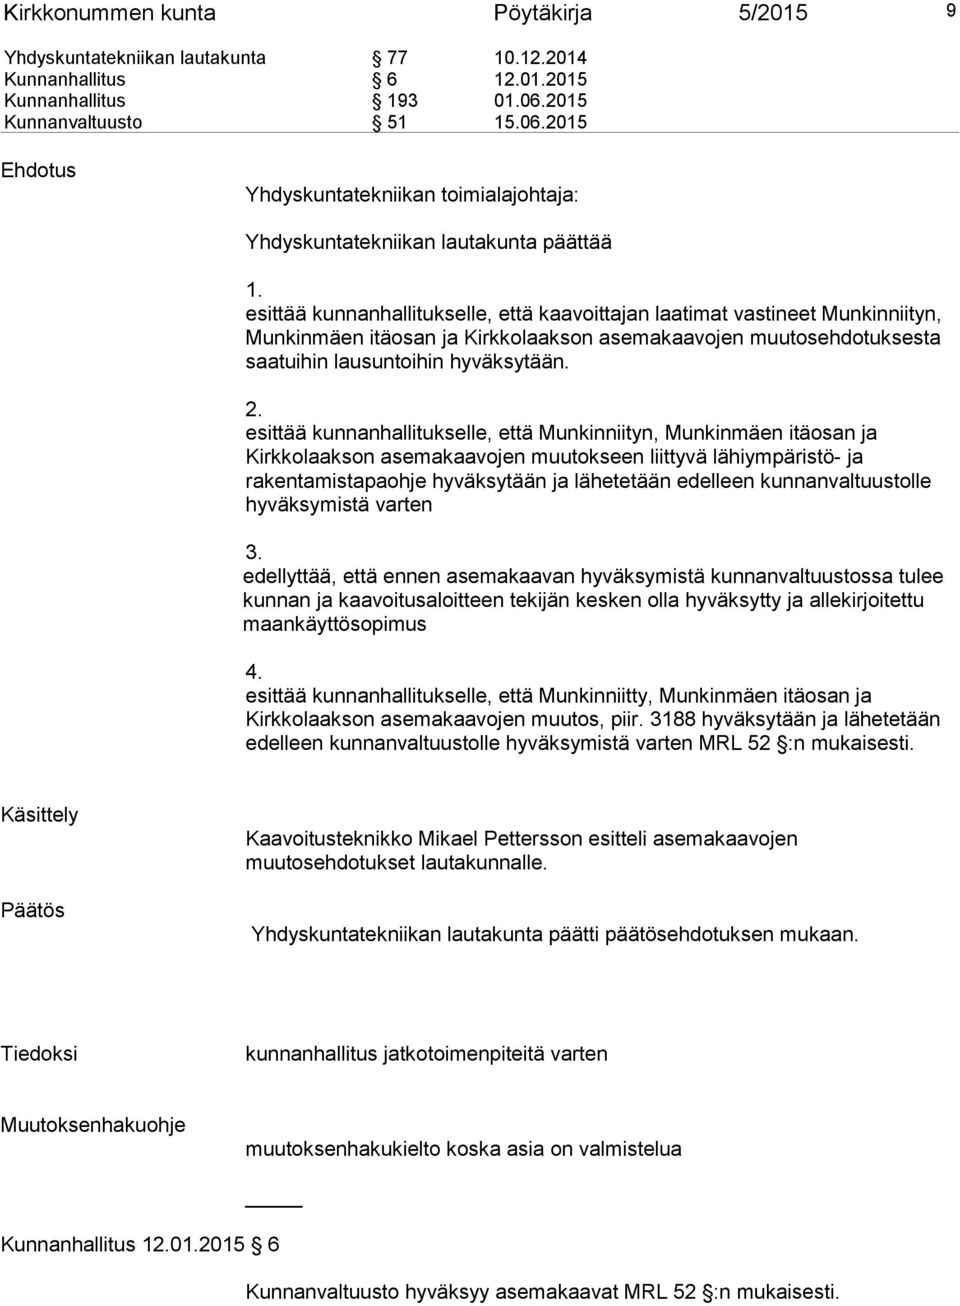 esittää kunnanhallitukselle, että kaavoittajan laatimat vastineet Munkinniityn, Munkinmäen itäosan ja Kirkkolaakson asemakaavojen muutosehdotuksesta saatuihin lausuntoihin hyväksytään. 2.